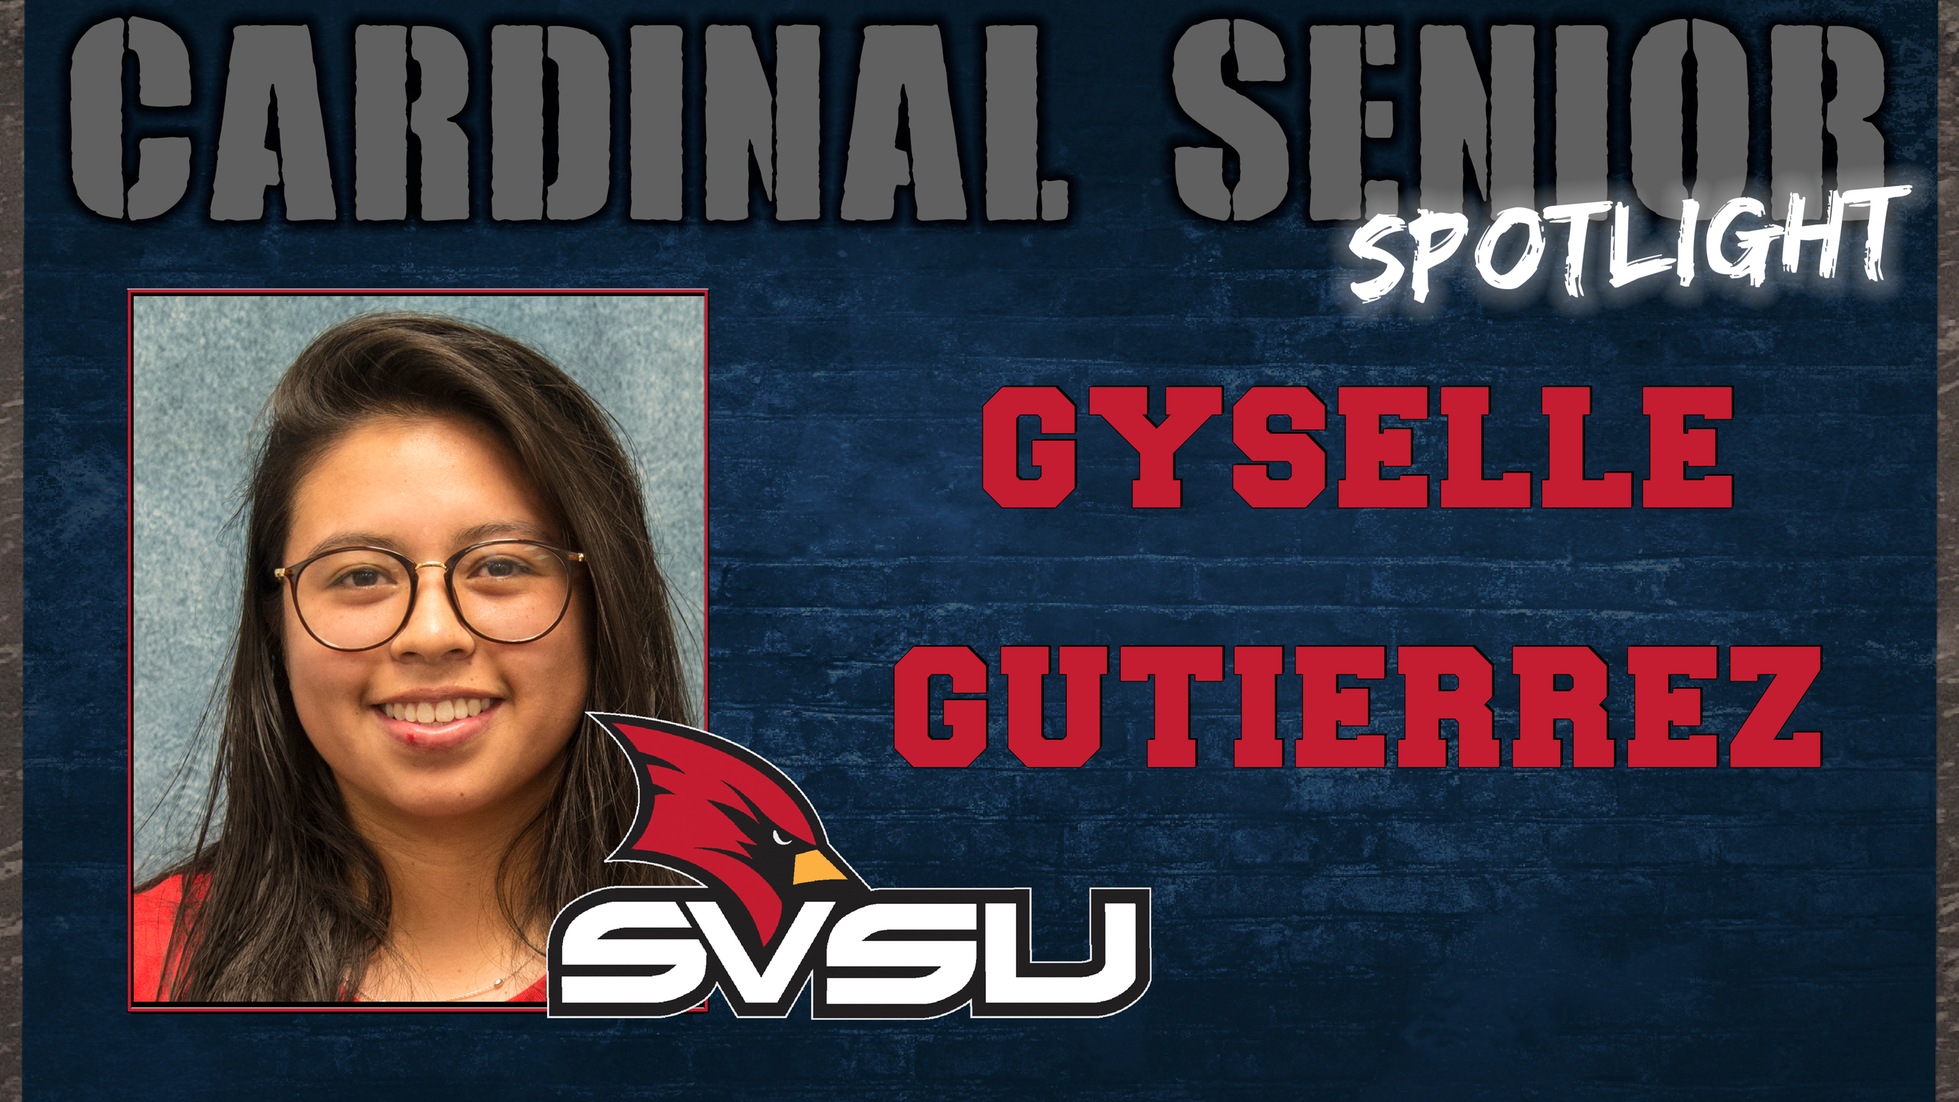 SVSU Cardinal Senior Spotlight - Gyselle Daza Gutierrez